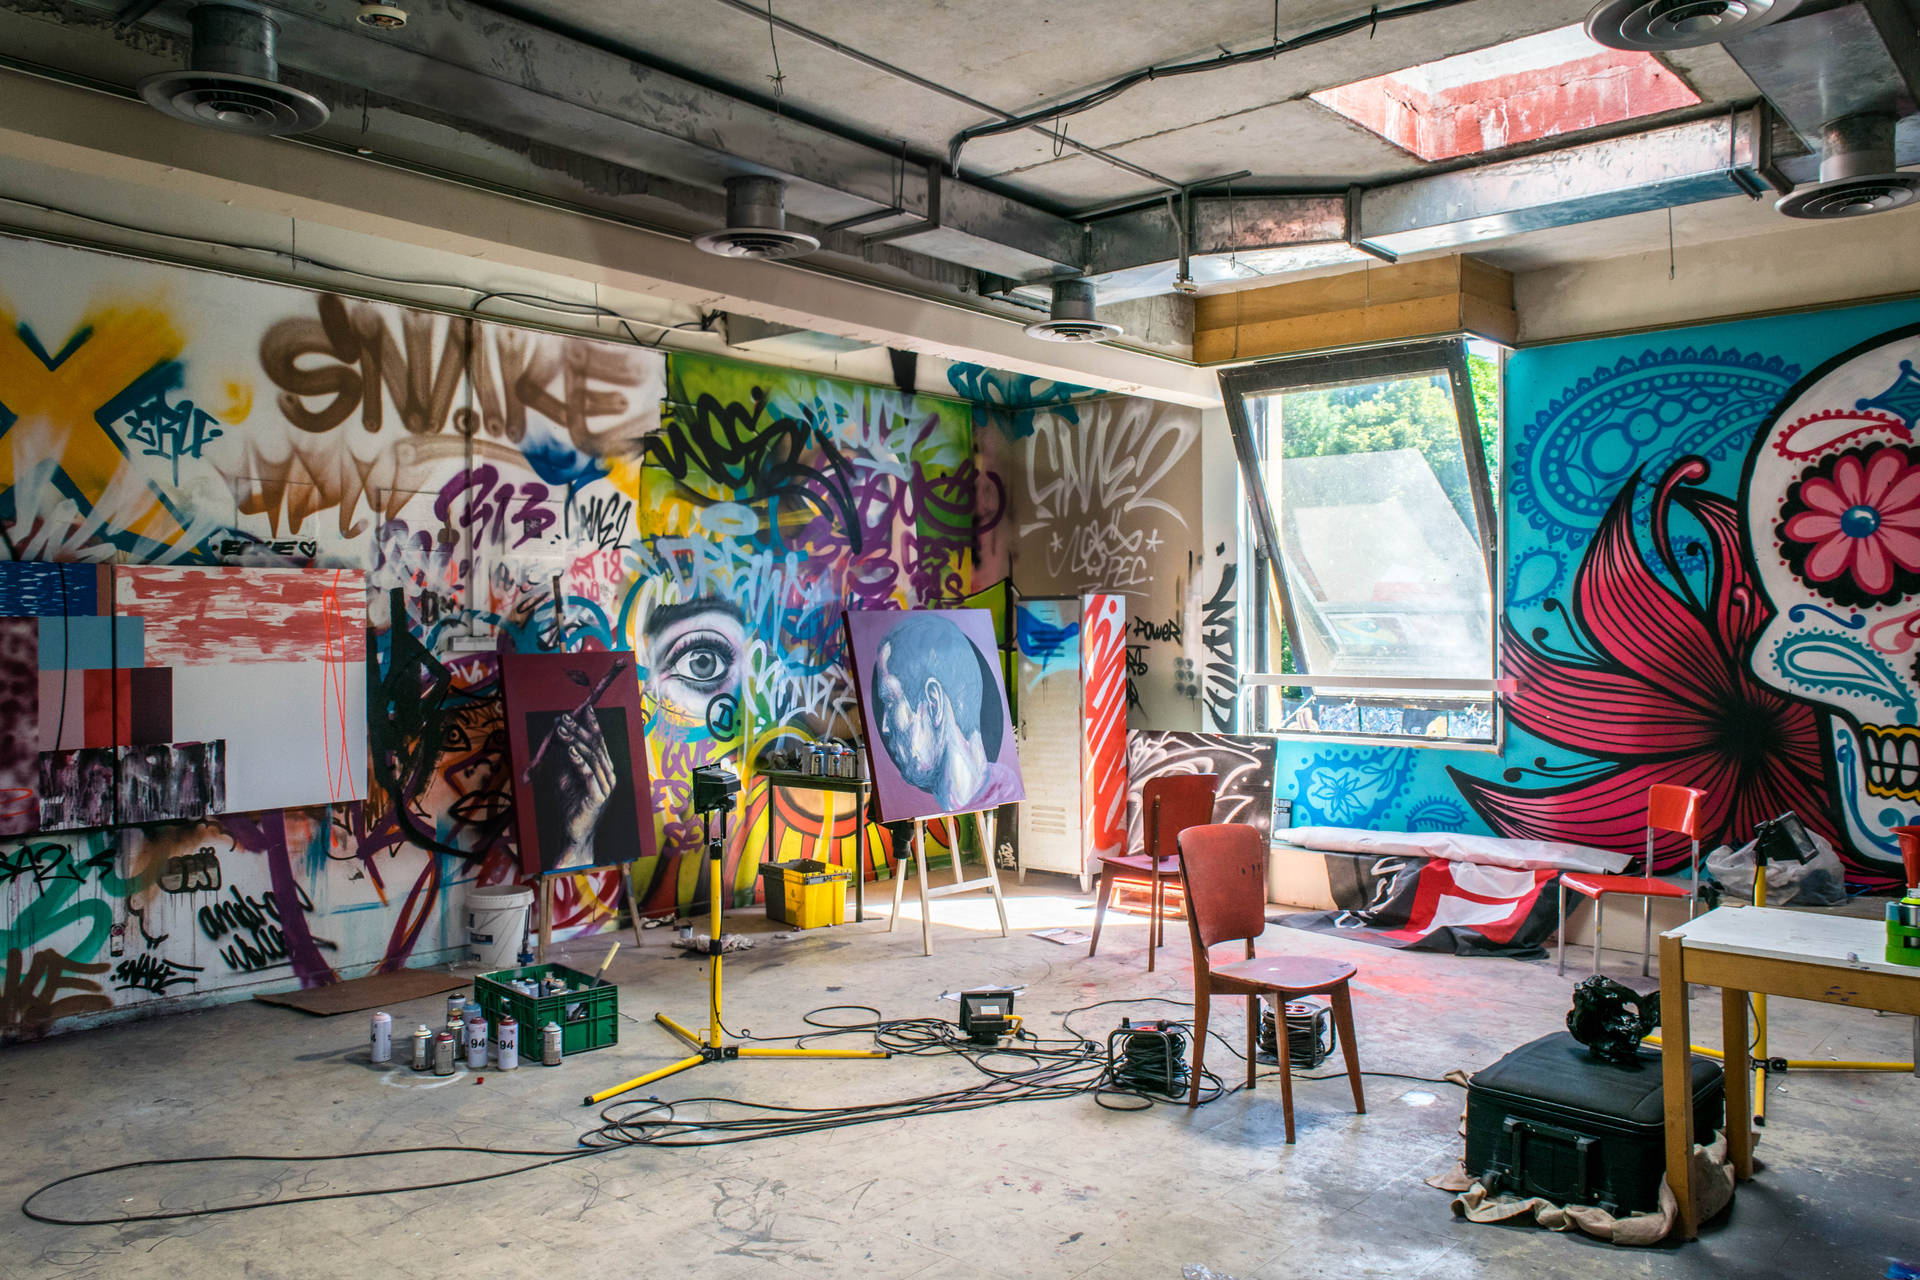 Street Art Studio In Building